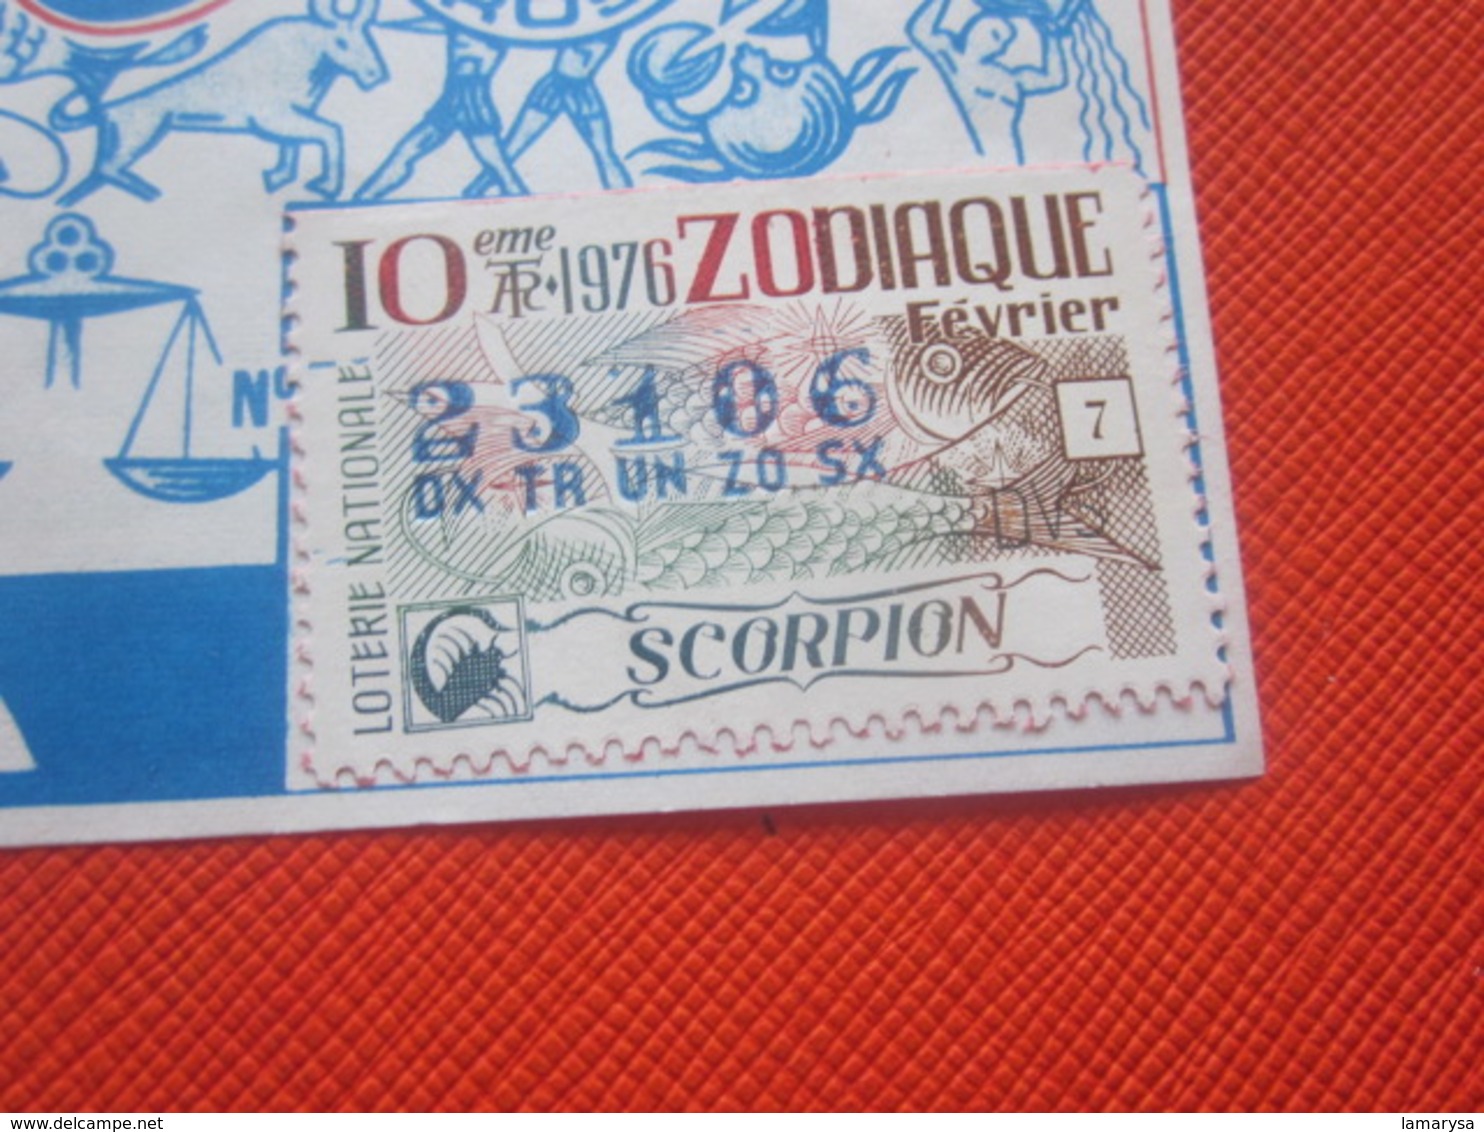 1976-ROSA SIGNES DU ZODIAQUE-SCORPION- Billet De La Loterie Nationale+VIGNETTE-IMPRIMÉE TAILLE DOUCE - Billets De Loterie